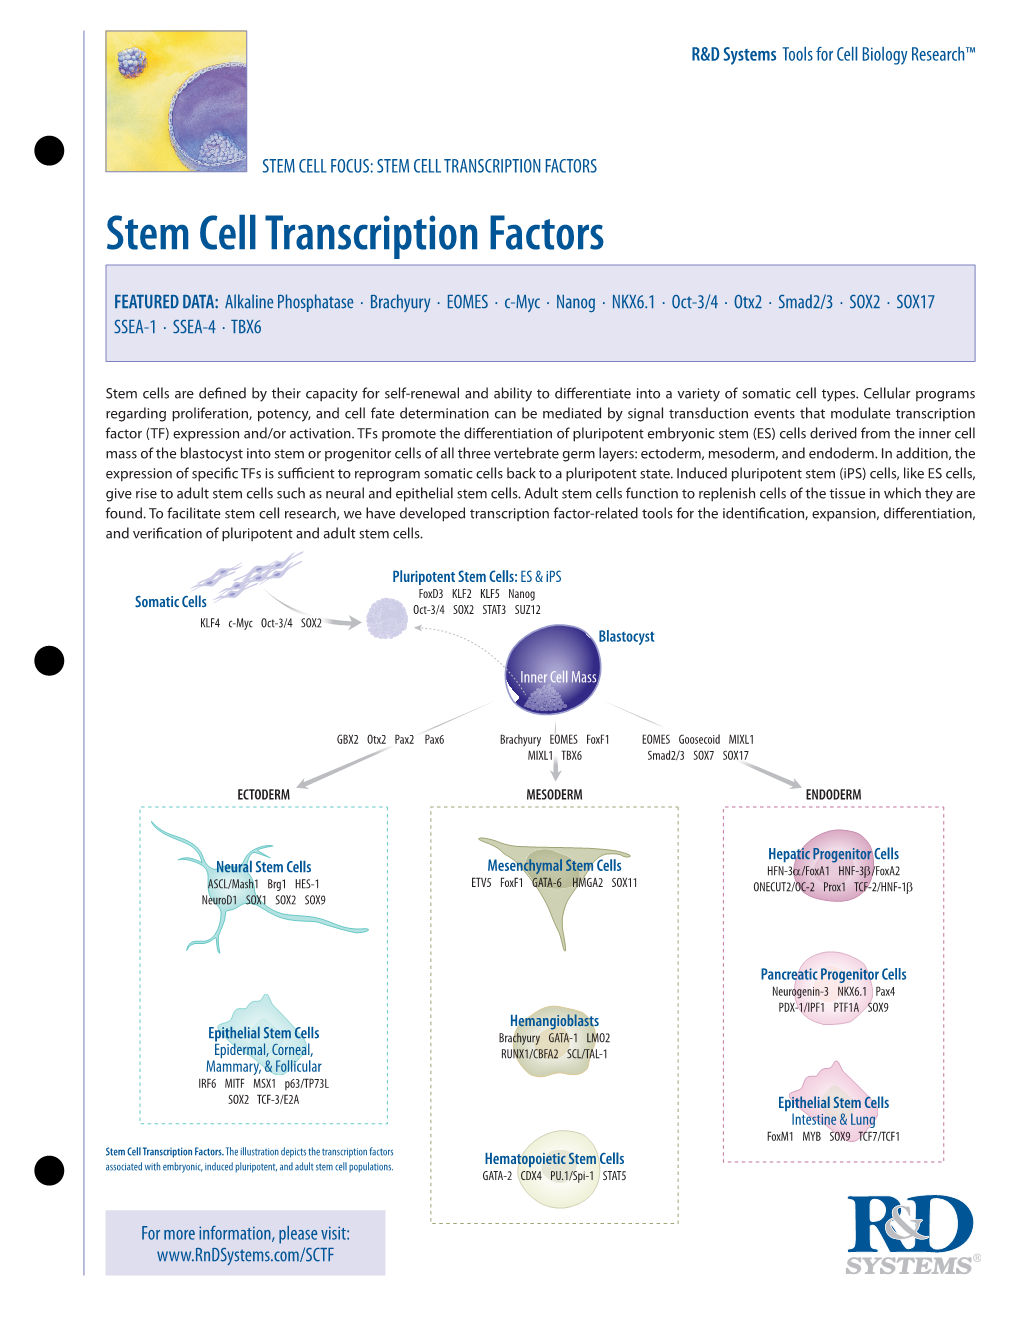 STEM CELL TRANSCRIPTION FACTORS Stem Cell Transcription Factors